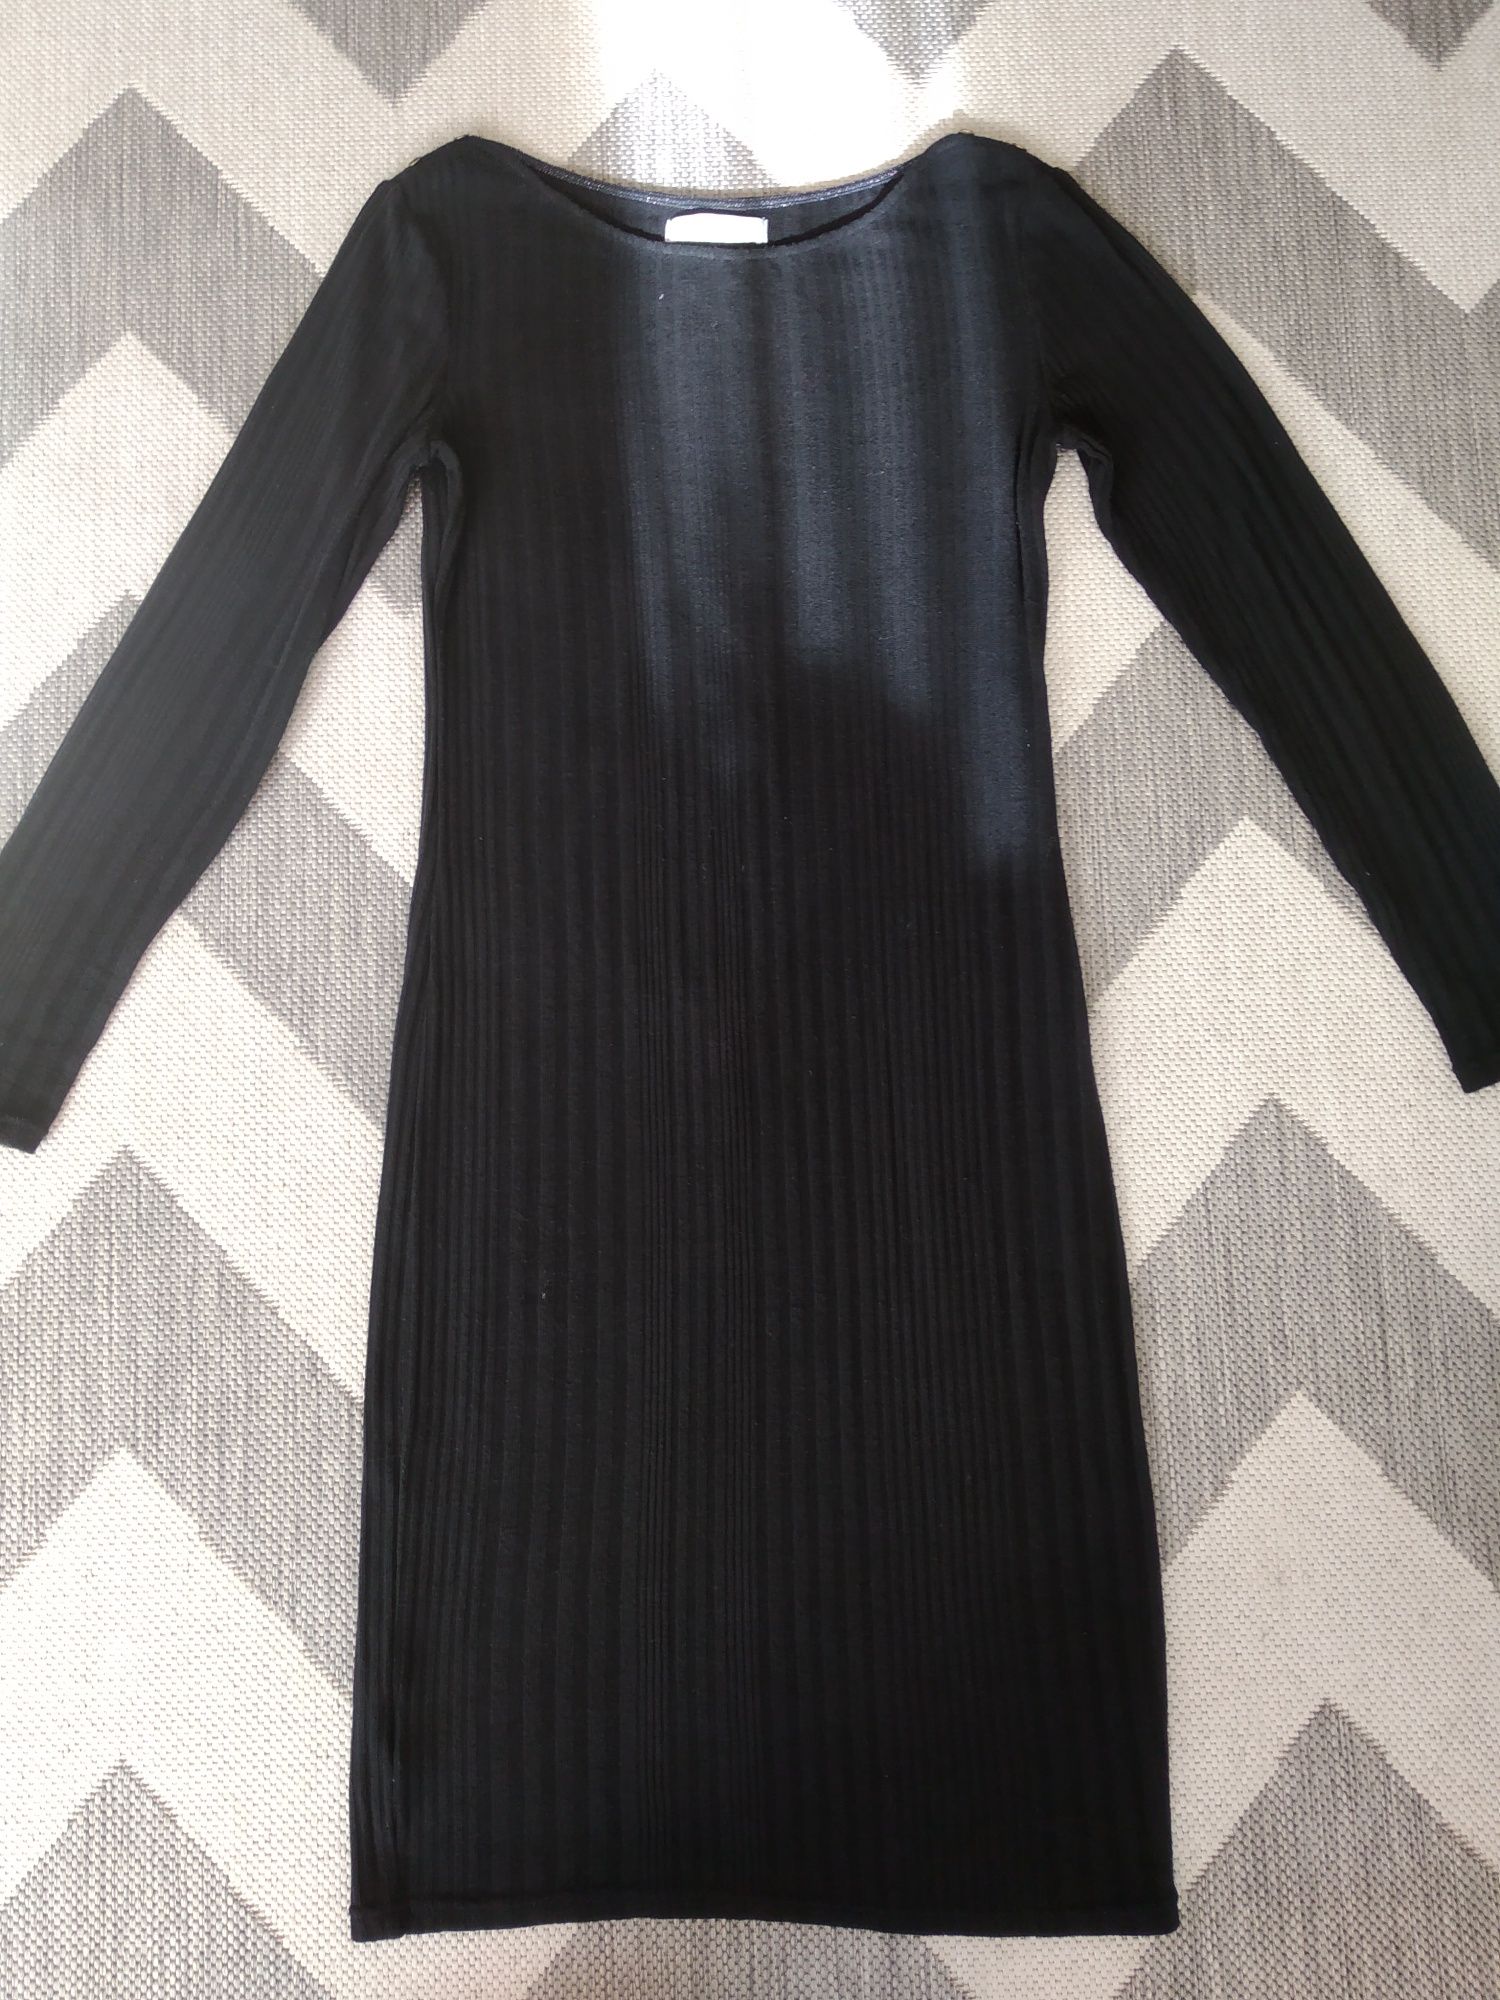 Czarna dzianinowa sukienka, Promod, rozmiar 38